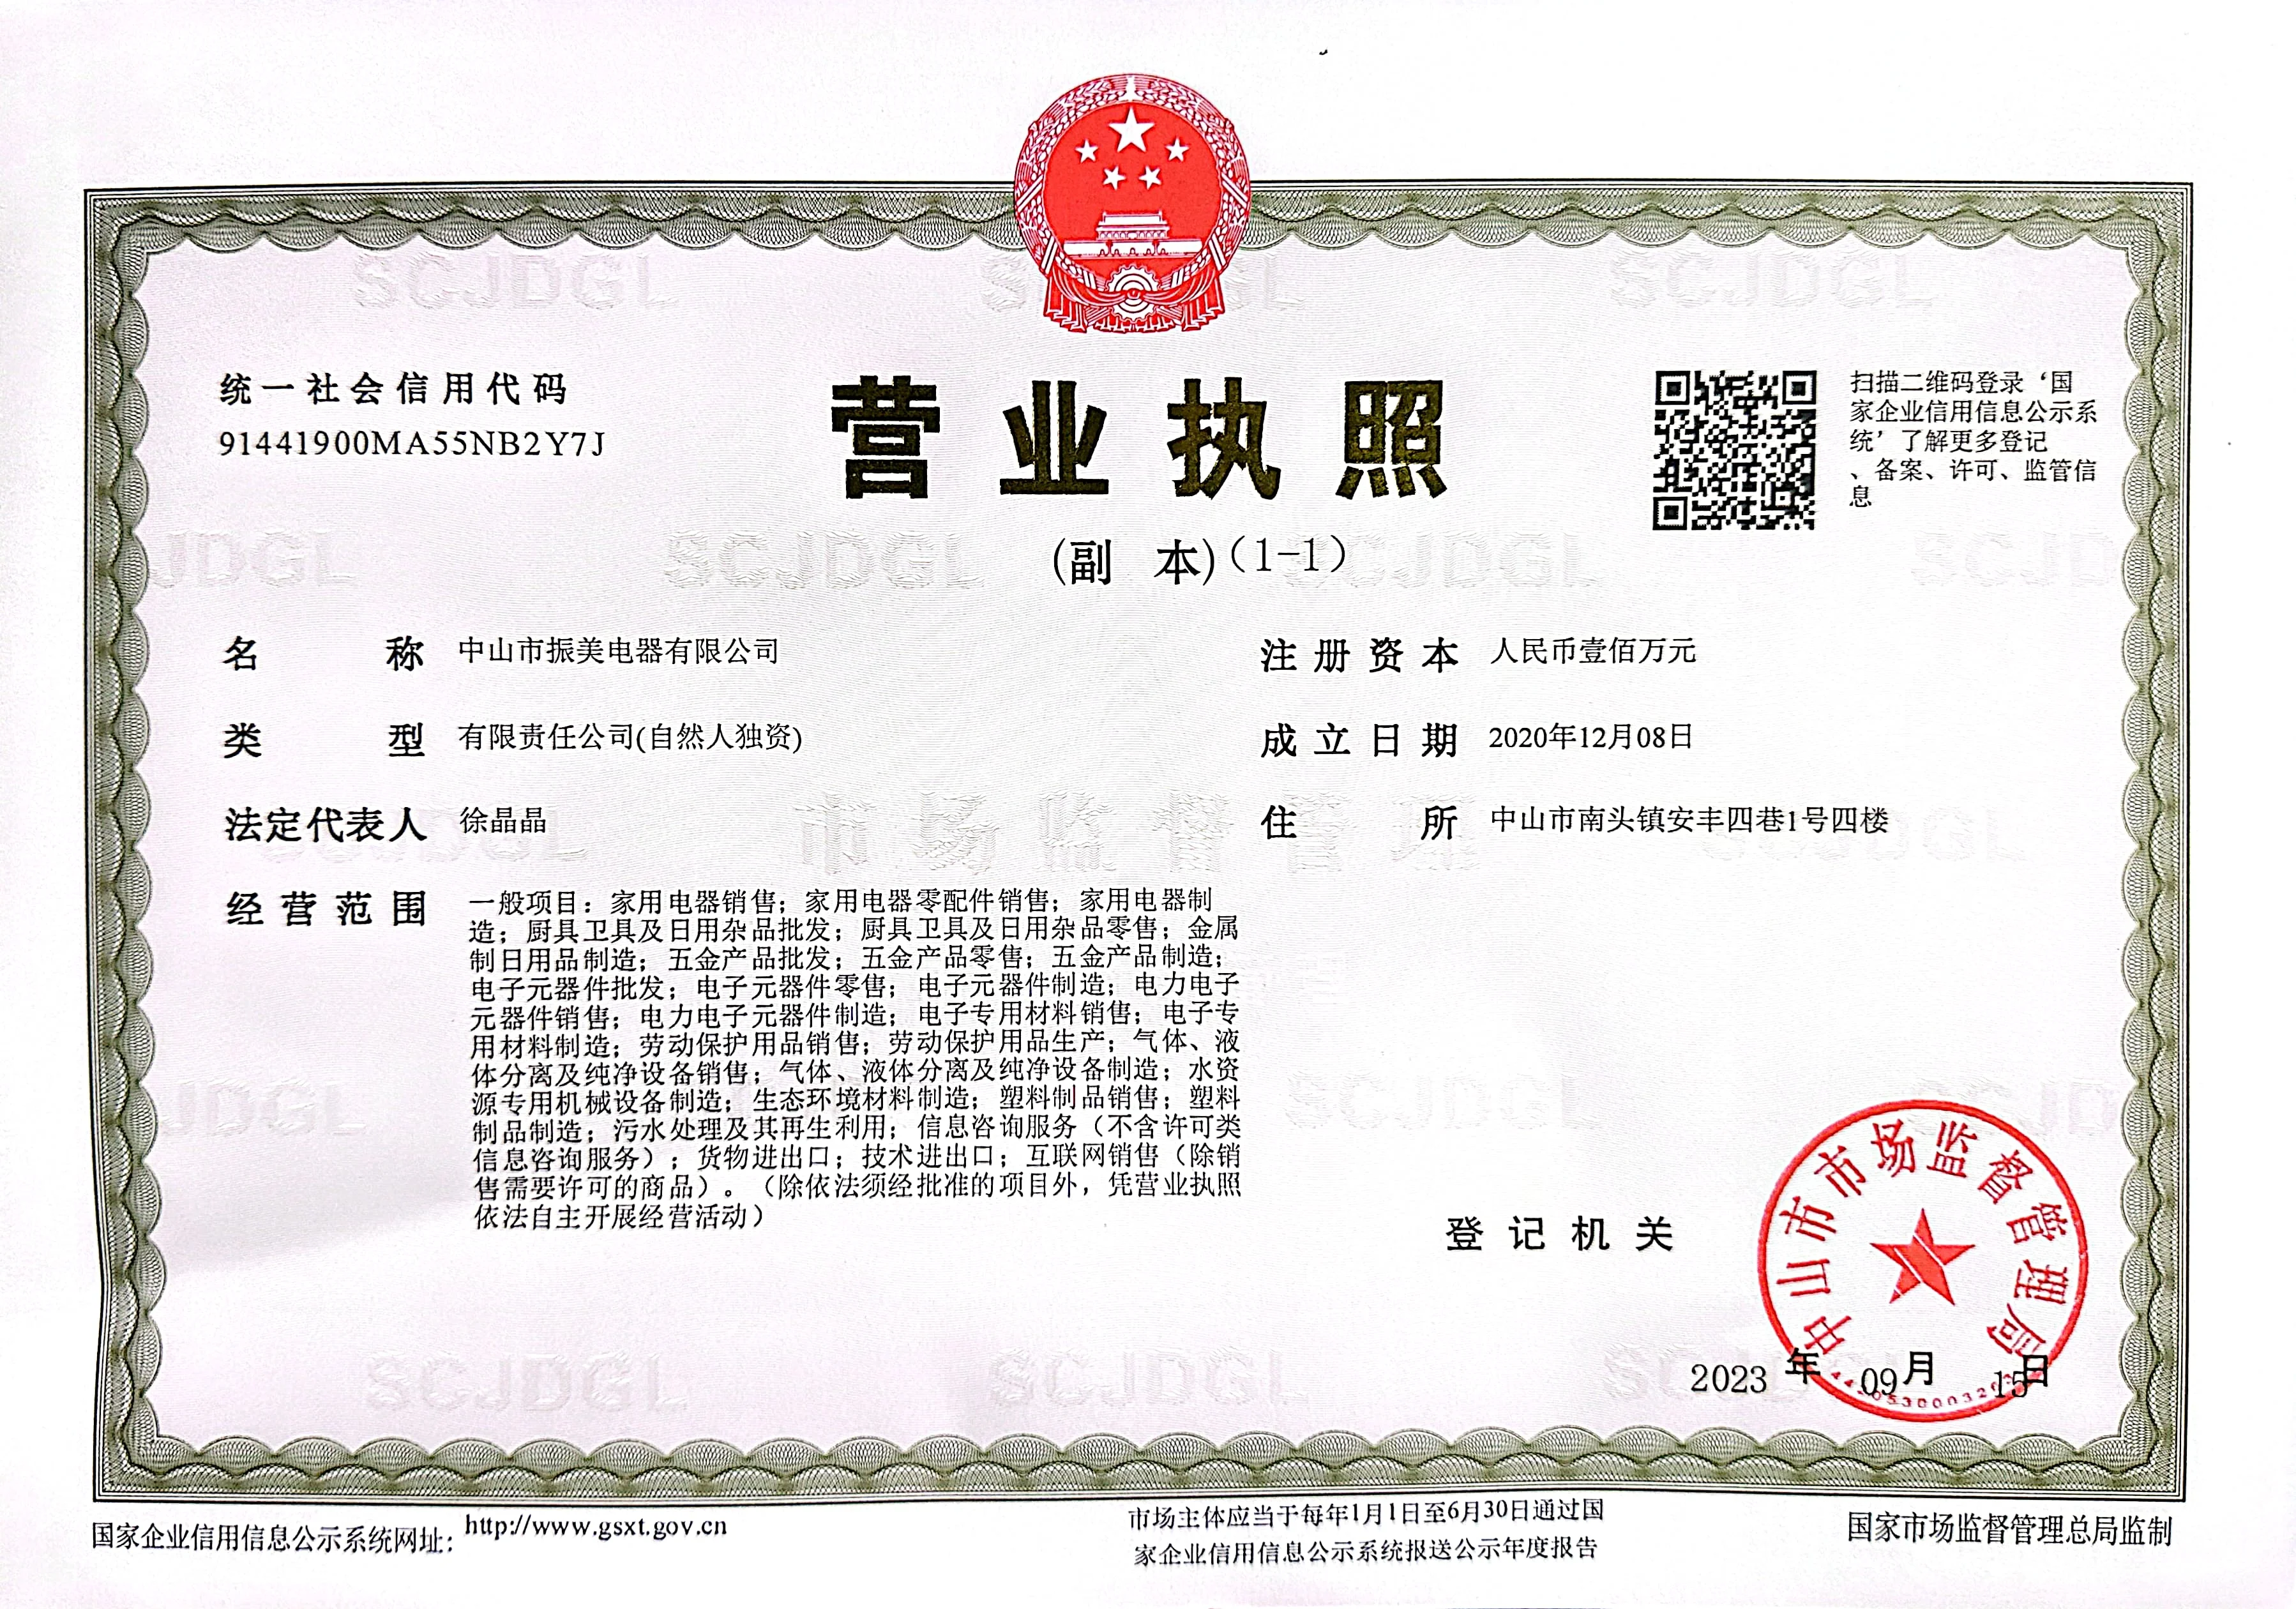 Company Overview - Zhongshan Zhenmei Electric Appliance Co., Ltd.